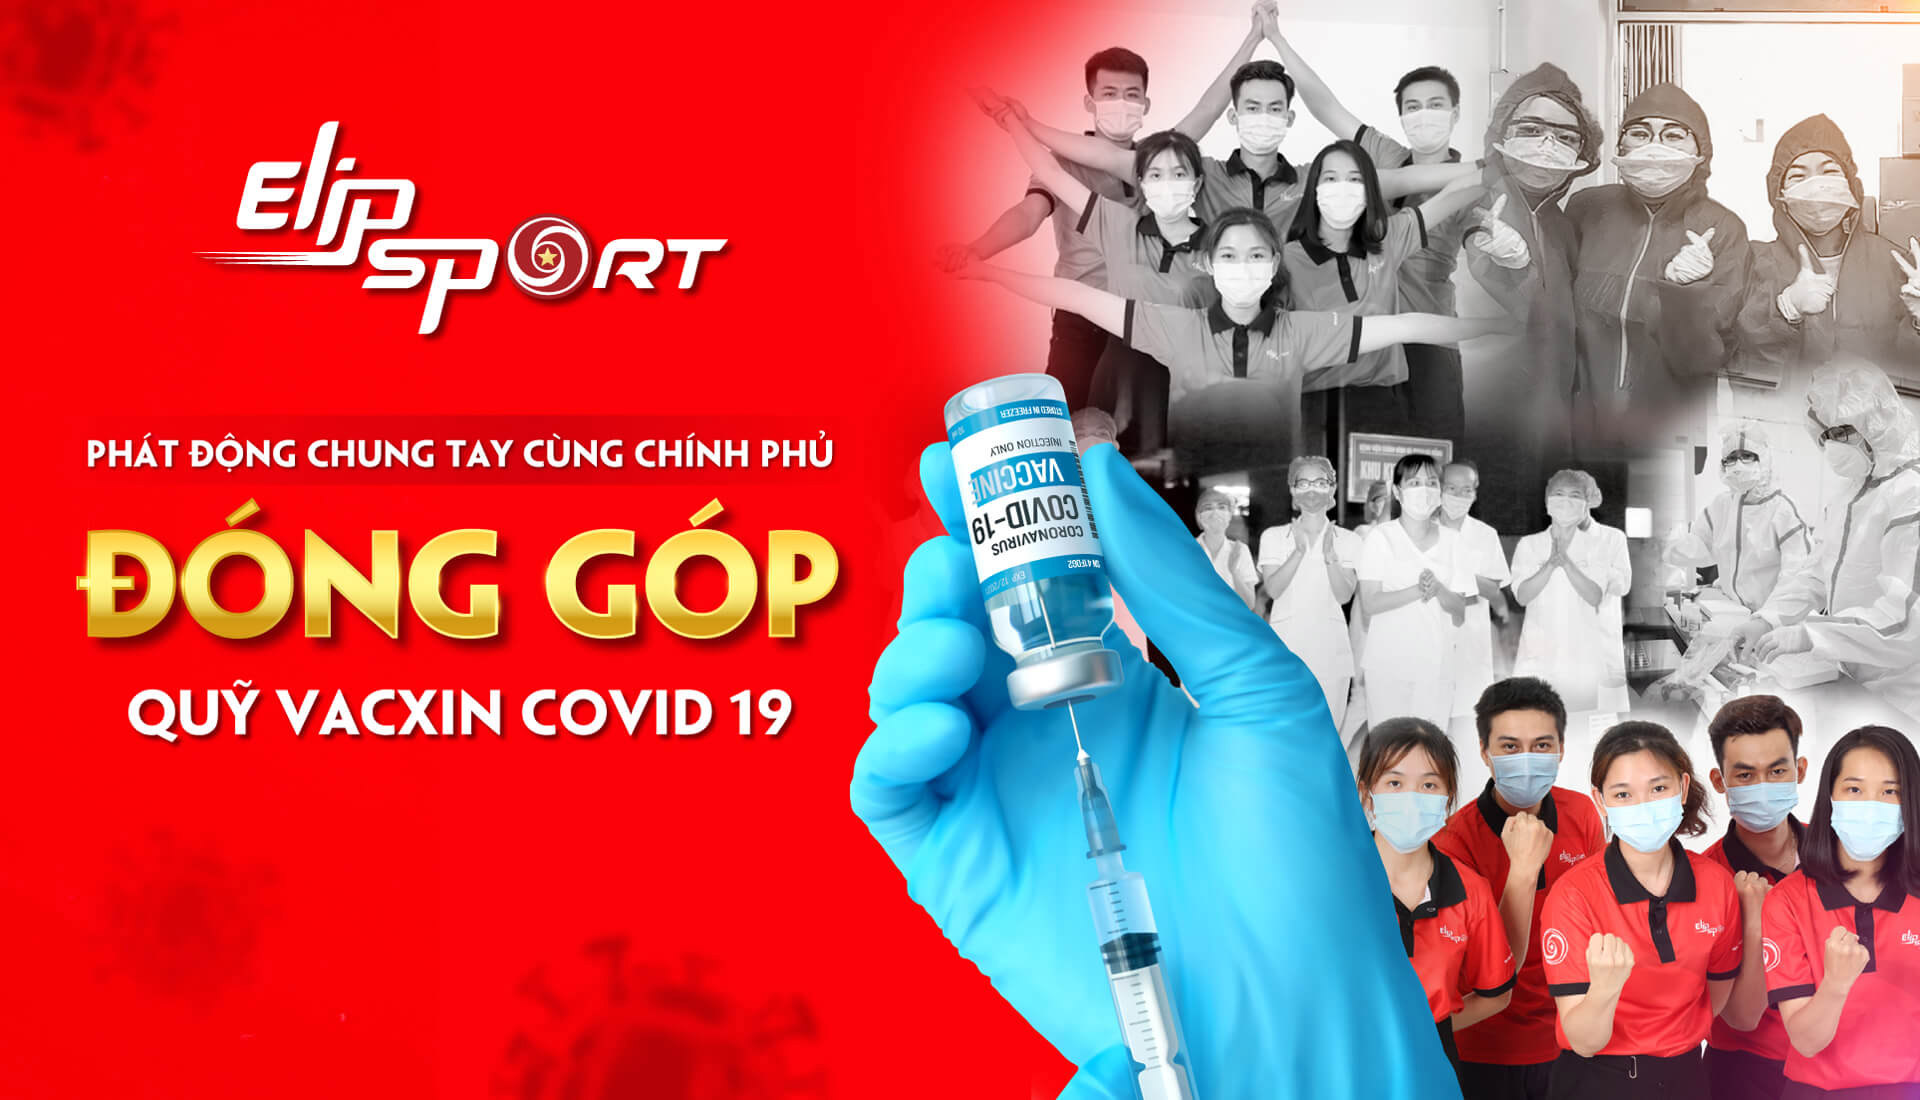 Hướng dẫn cách ủng hộ Quỹ vaccine phòng COVID-19 chung tay cùng Elipsport - ảnh 1